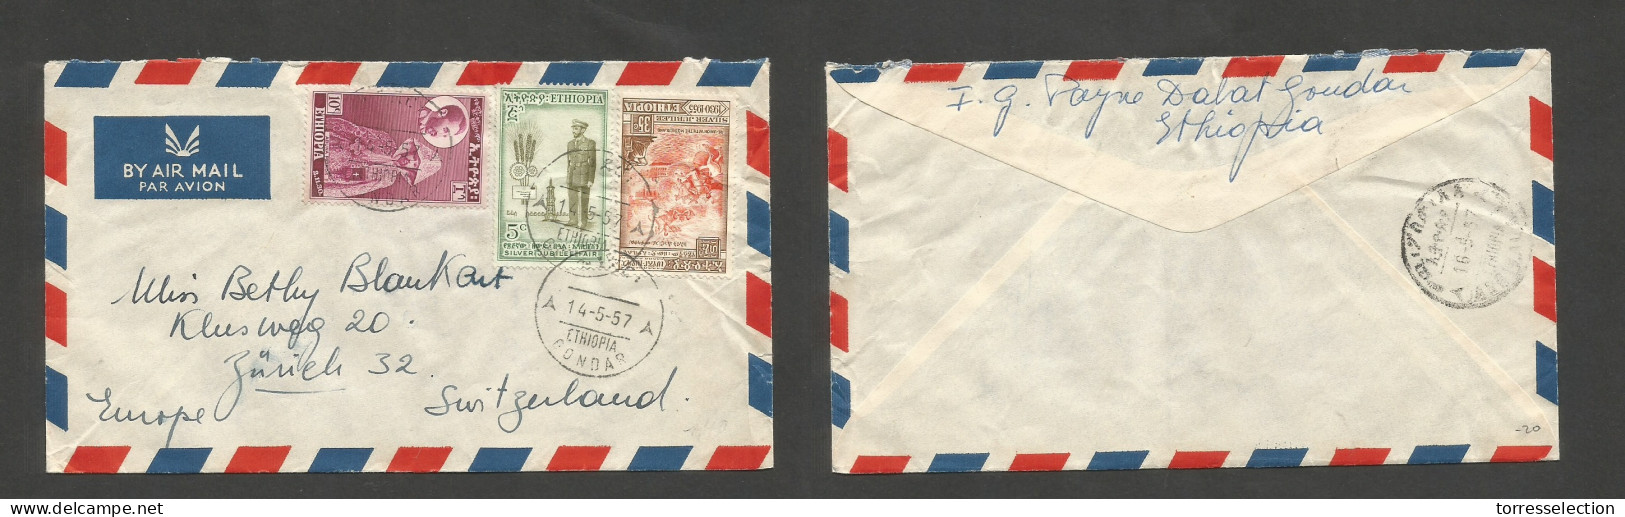 ETHIOPIA. 1957 (14 May) Gondar - Switzerland, Zurich. Air Multifkd Mixed Issues Envelope, Tied Cds. VF. SALE. - Äthiopien